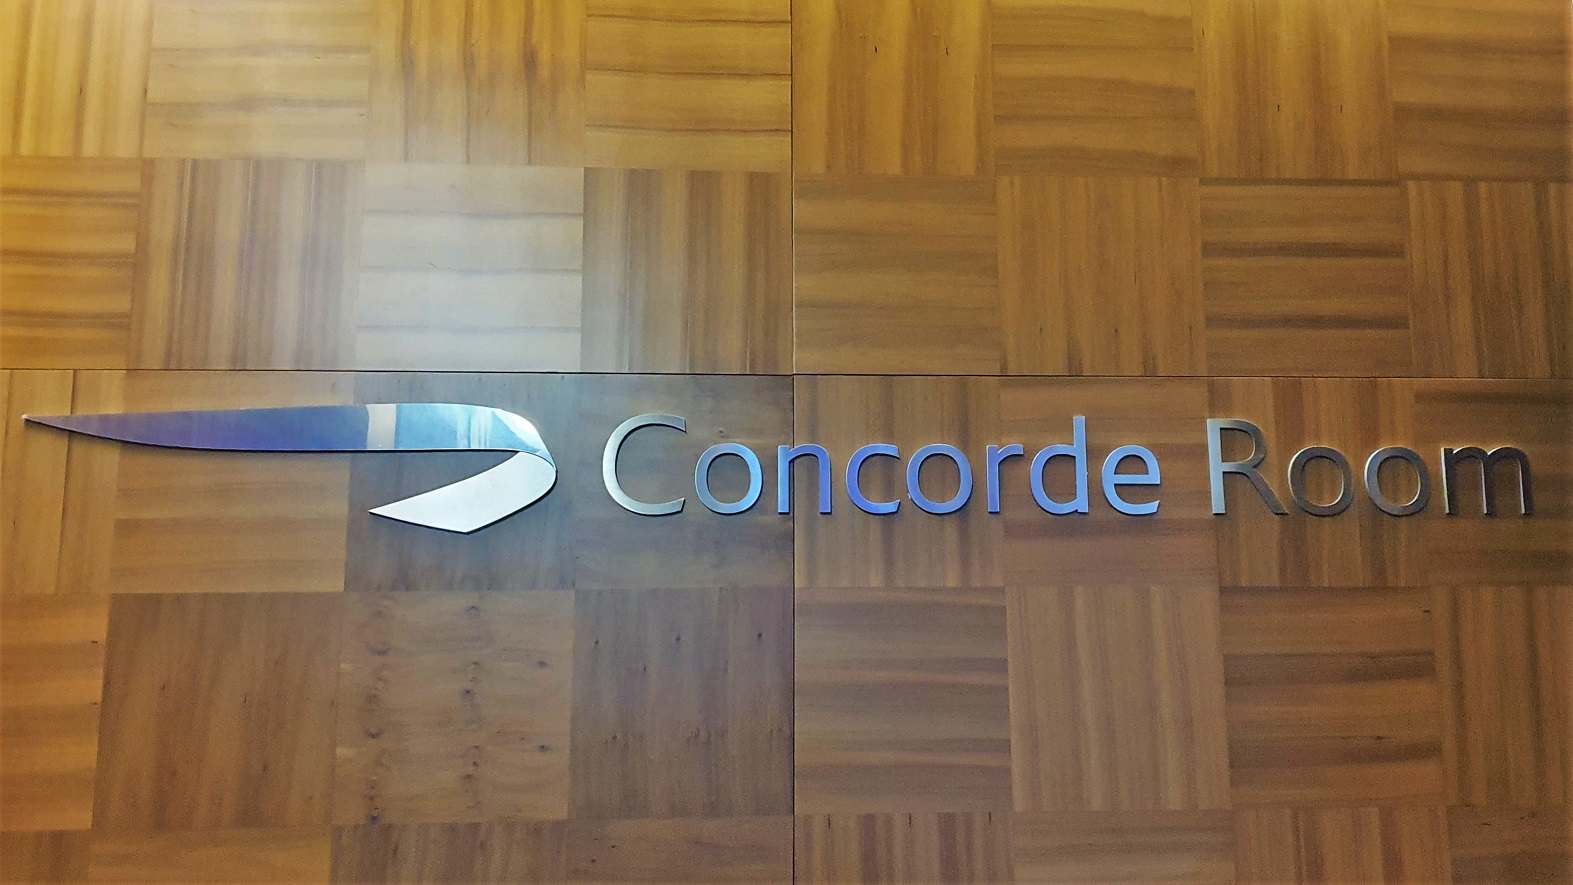 A Concorde Room a BA legexkluzívabb várója, mely csak Londonban és New Yorkban található.